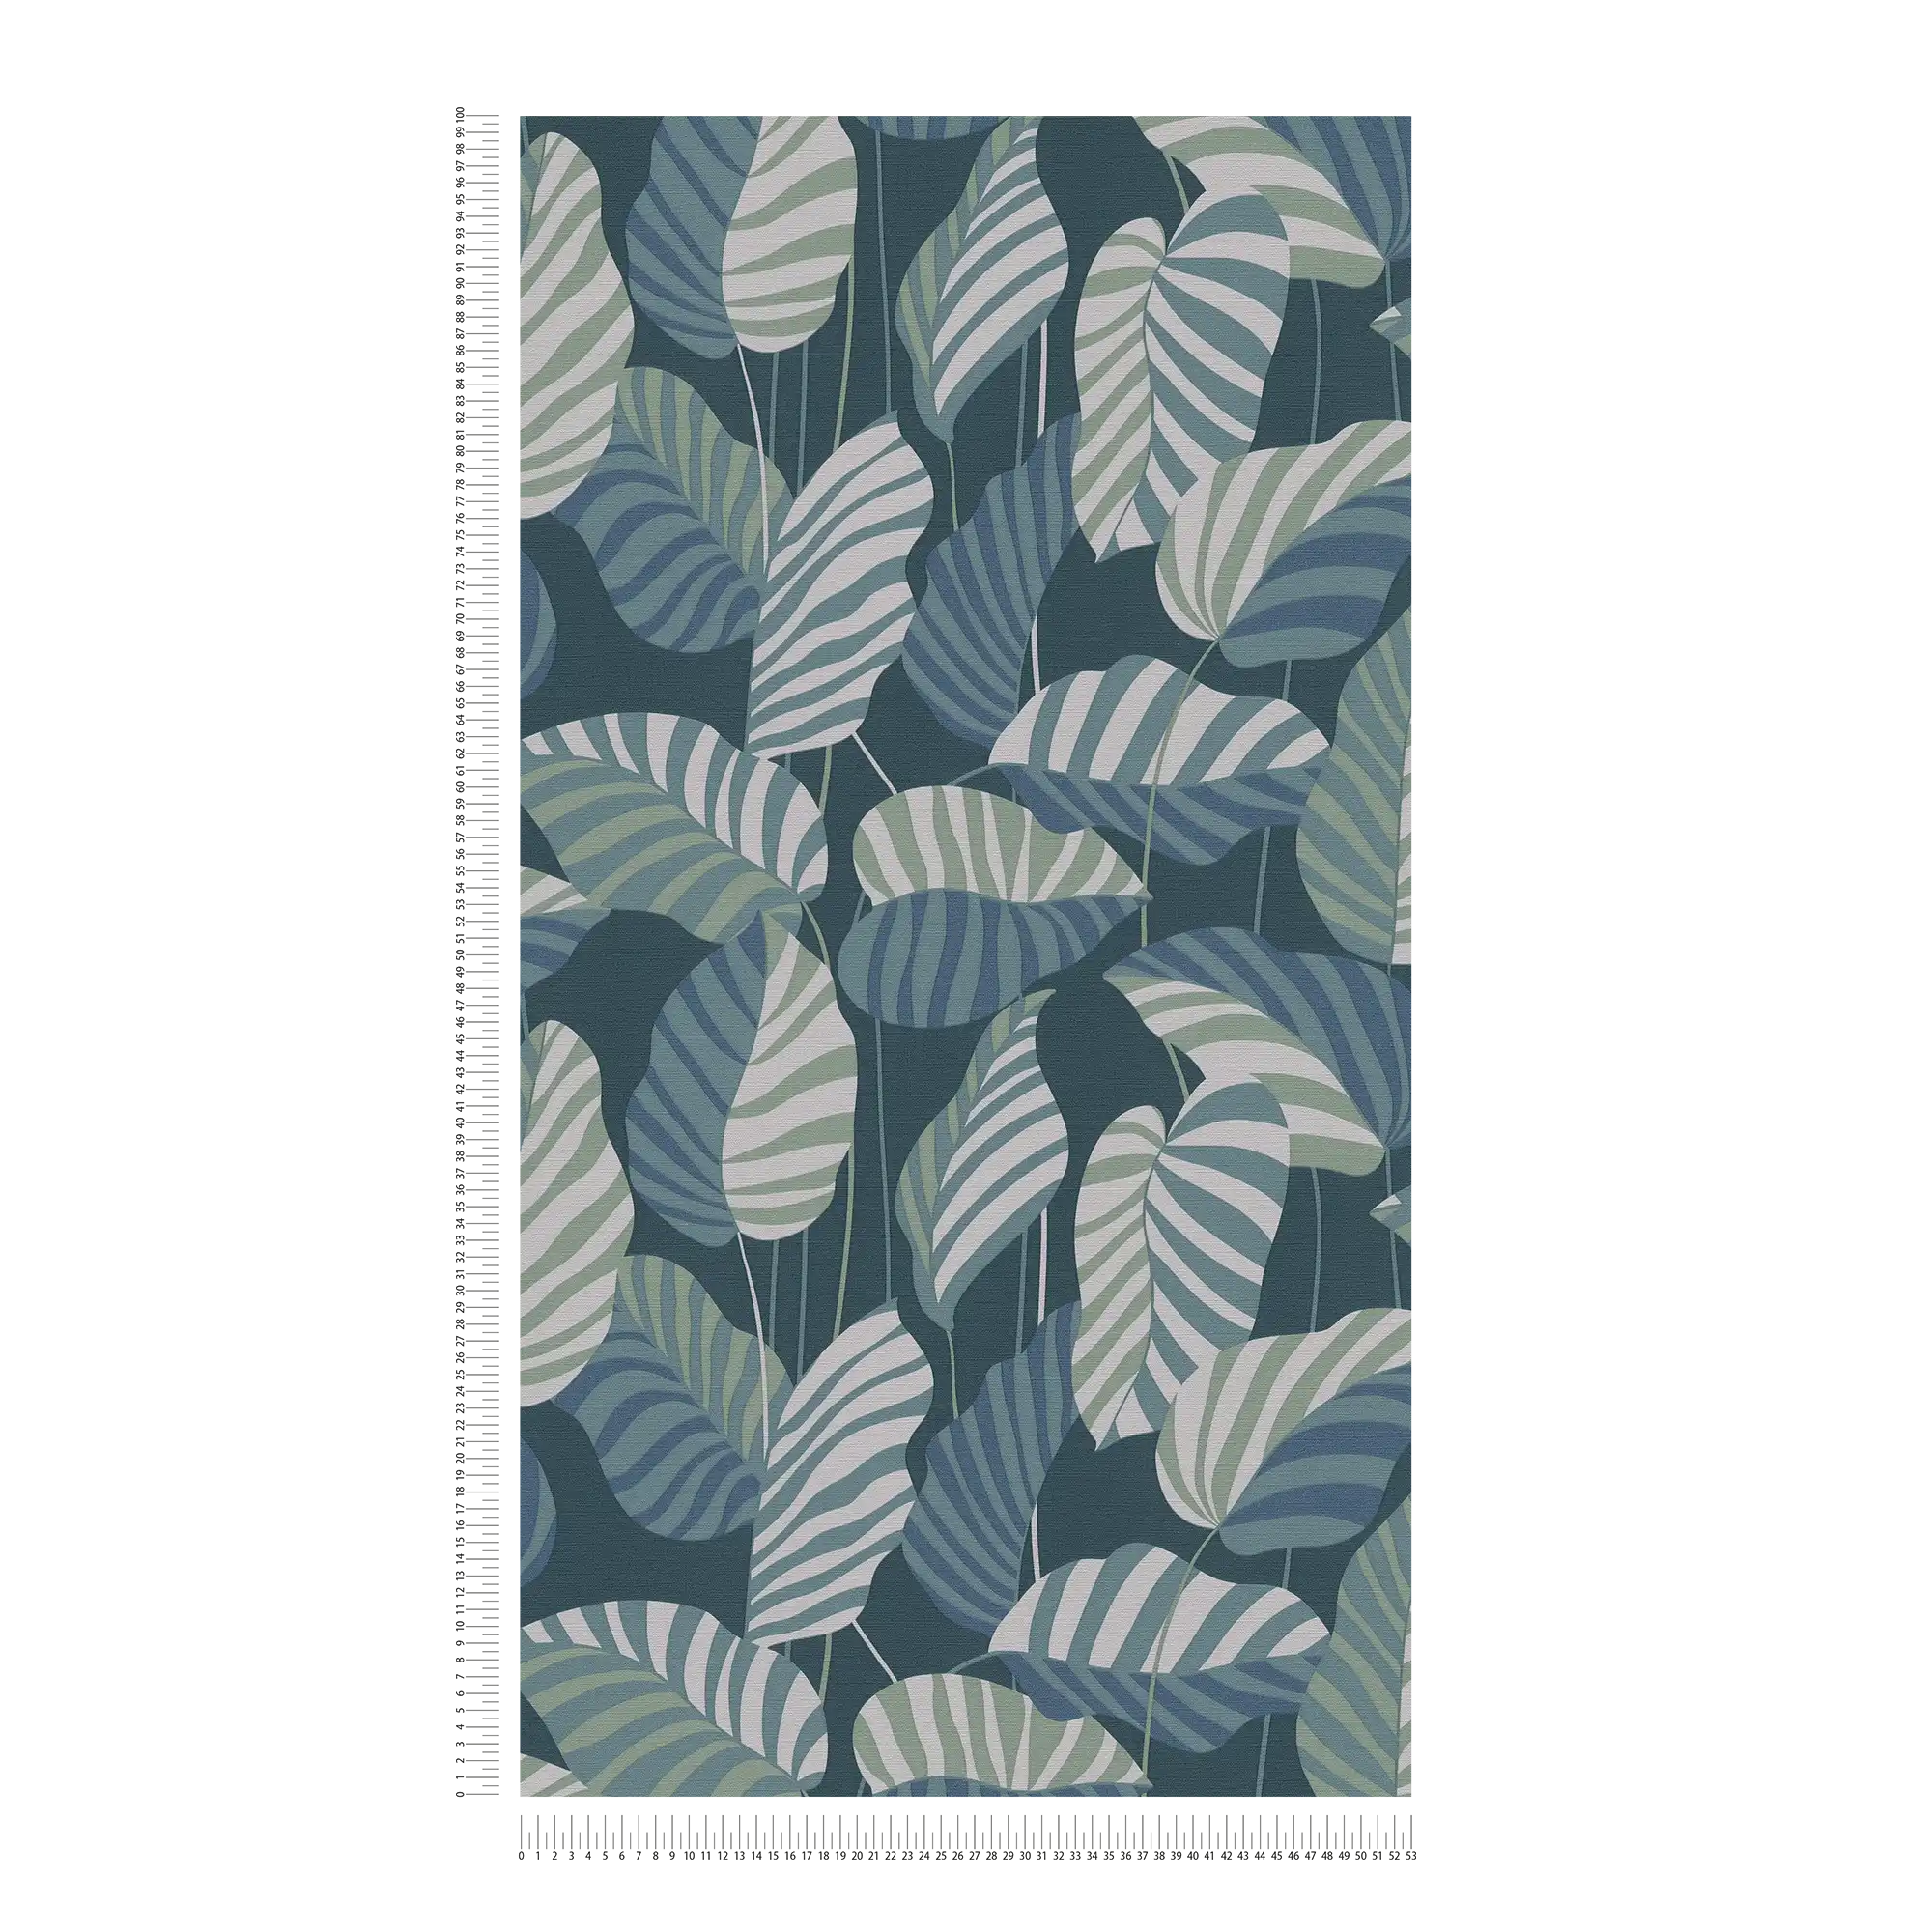             Vliestapete in Dschungelstil mit Blättern – Blau, Grün, Weiß
        